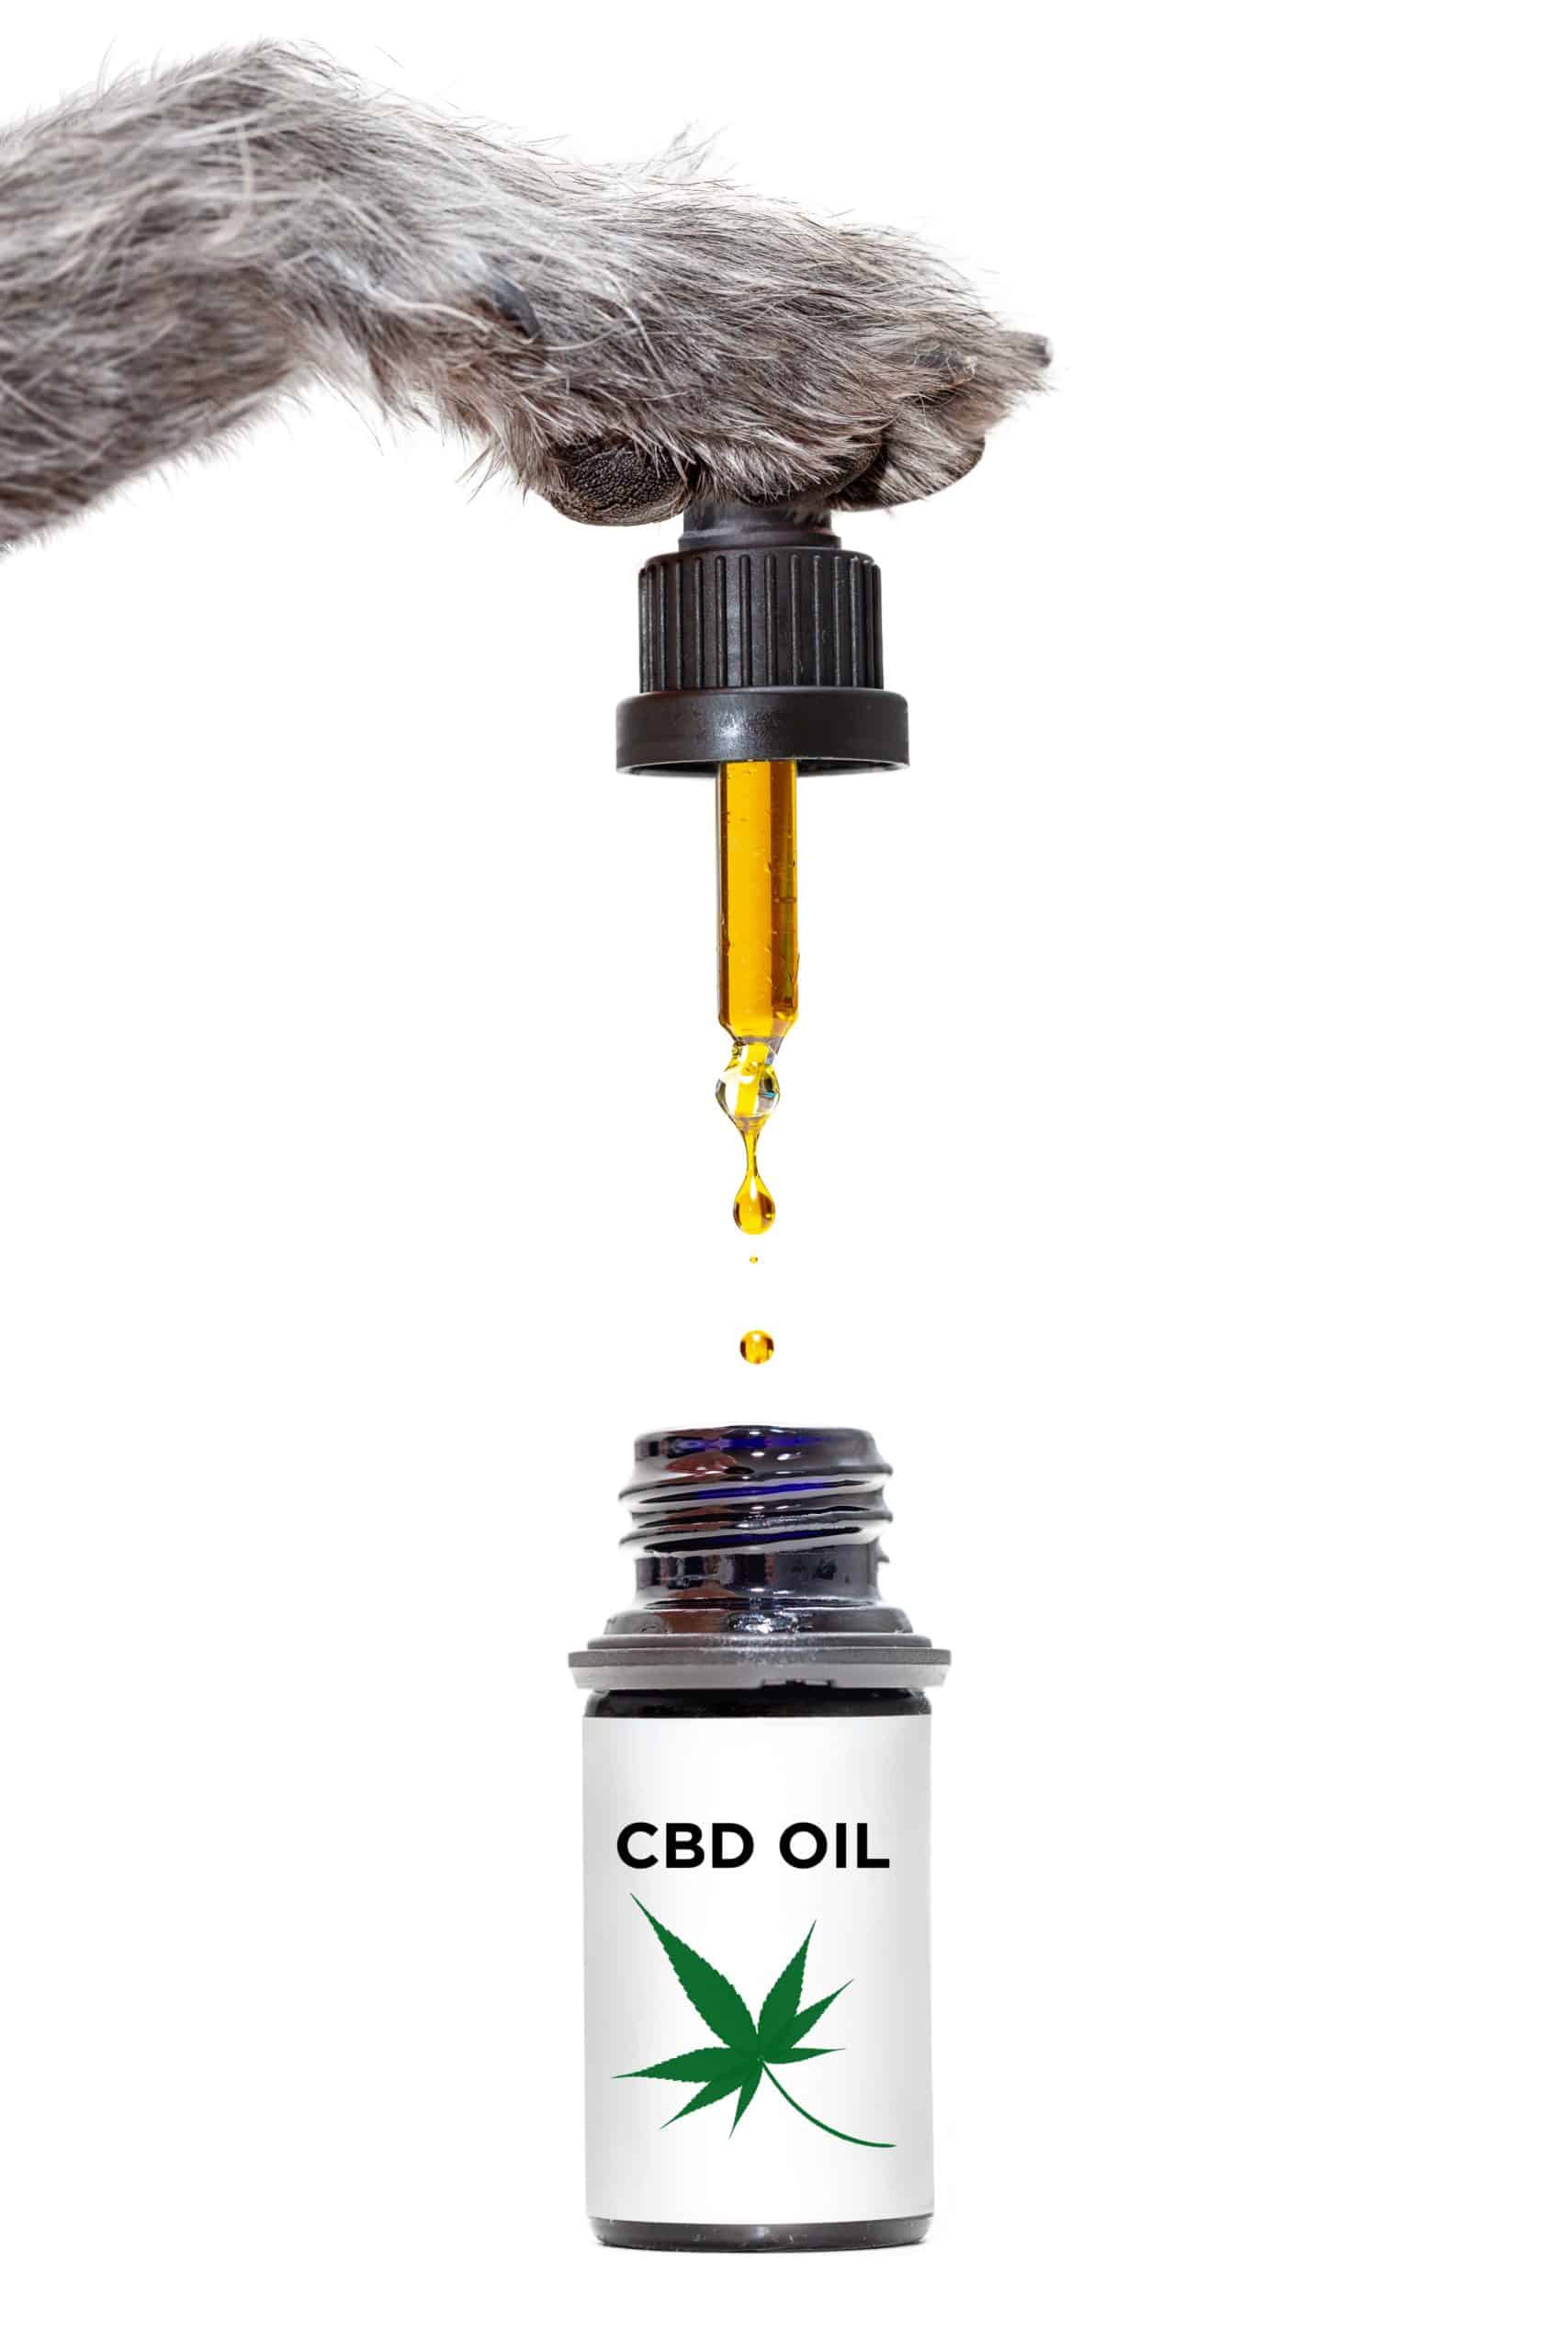 CBD oil for dogs illustration.